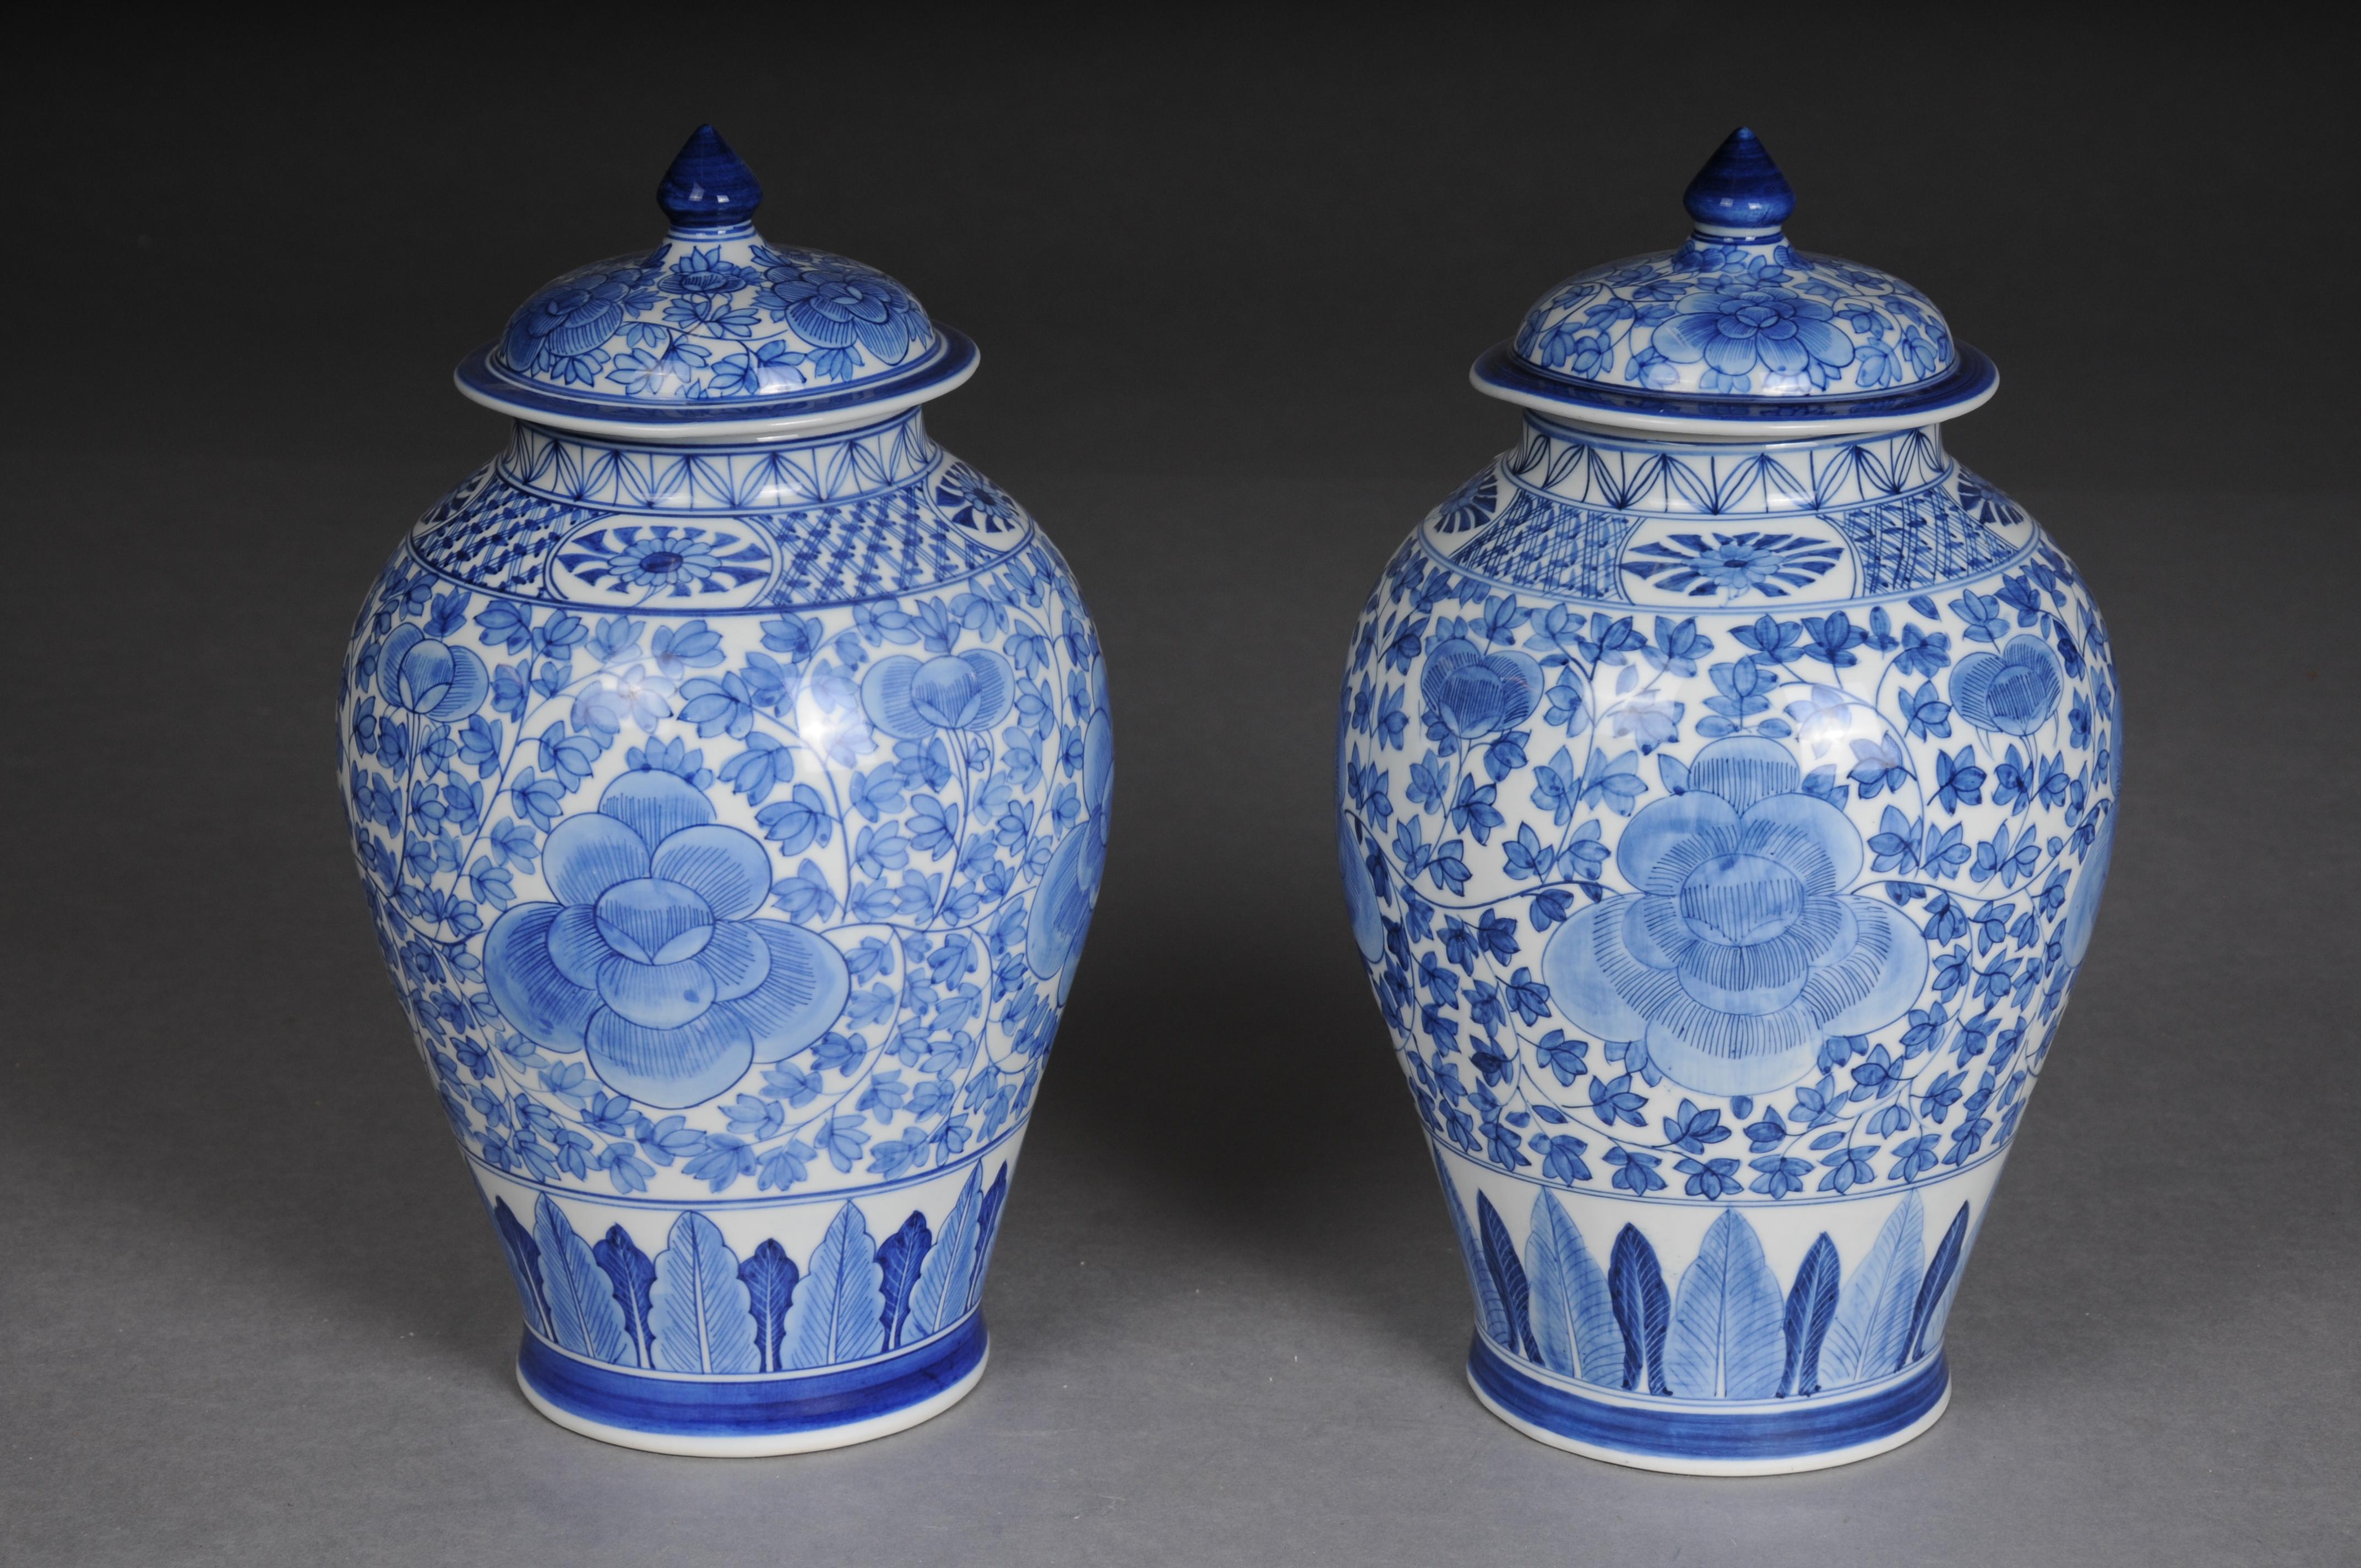 Asiatische Vasen mit Deckel, Porzellan, 20. Jahrhundert, Paar.

Porzellan, blaue Malerei mit asiatischem Muster. Zwiebelförmiger Körper mit gewölbtem Deckel, der mit einem spitzen Knauf gekrönt ist.
Ein sehr schönes Paar mit viel Charme und Stil.